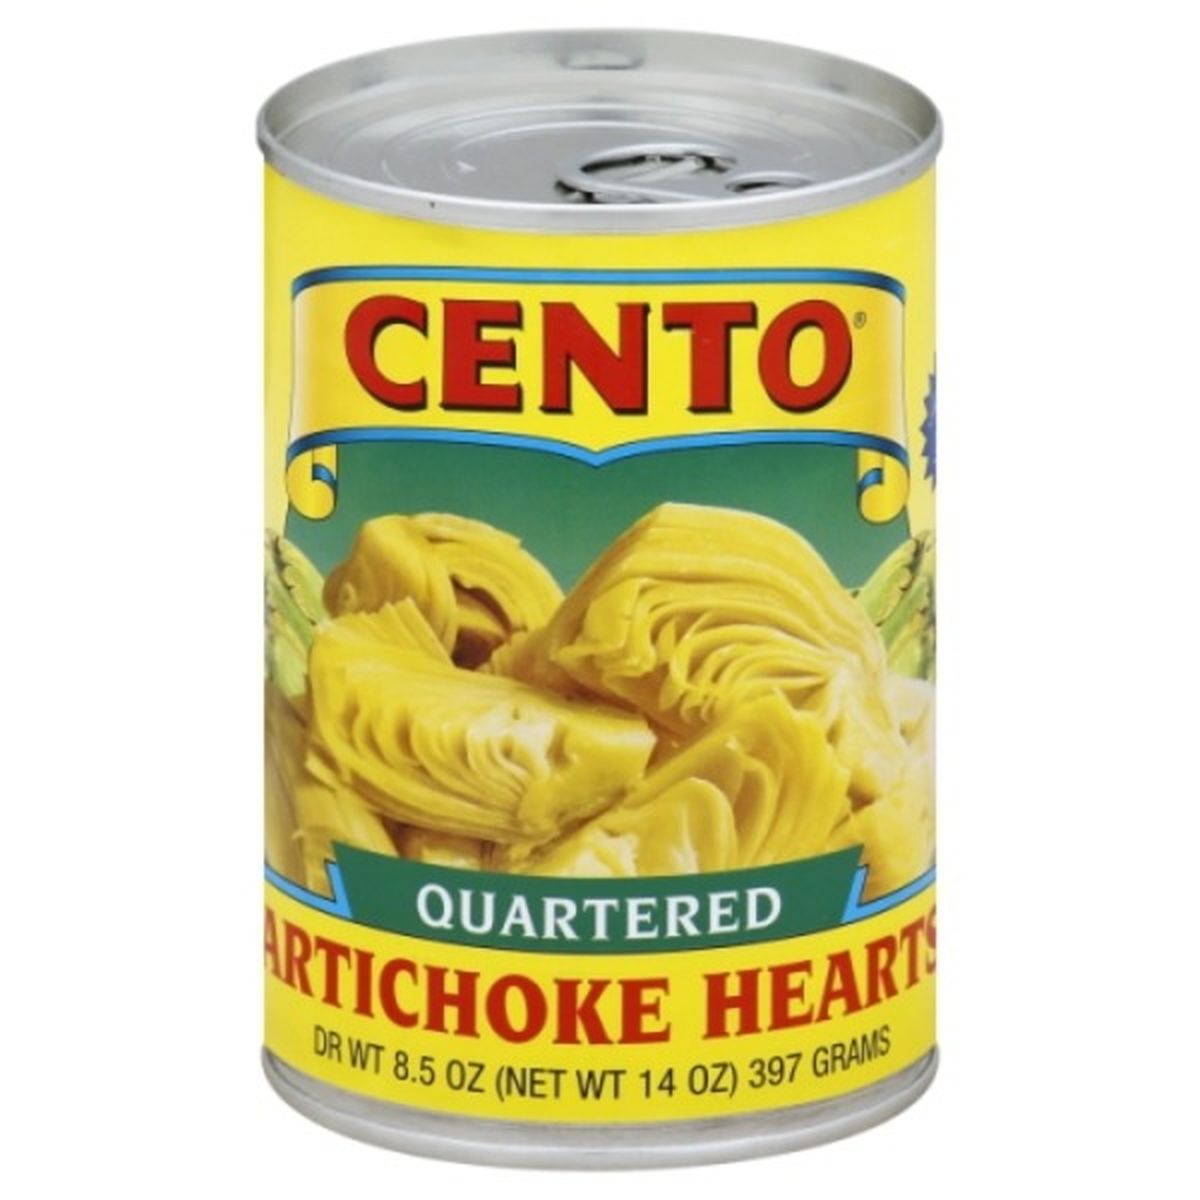 Calories in Cento Artichoke Hearts, Quartered